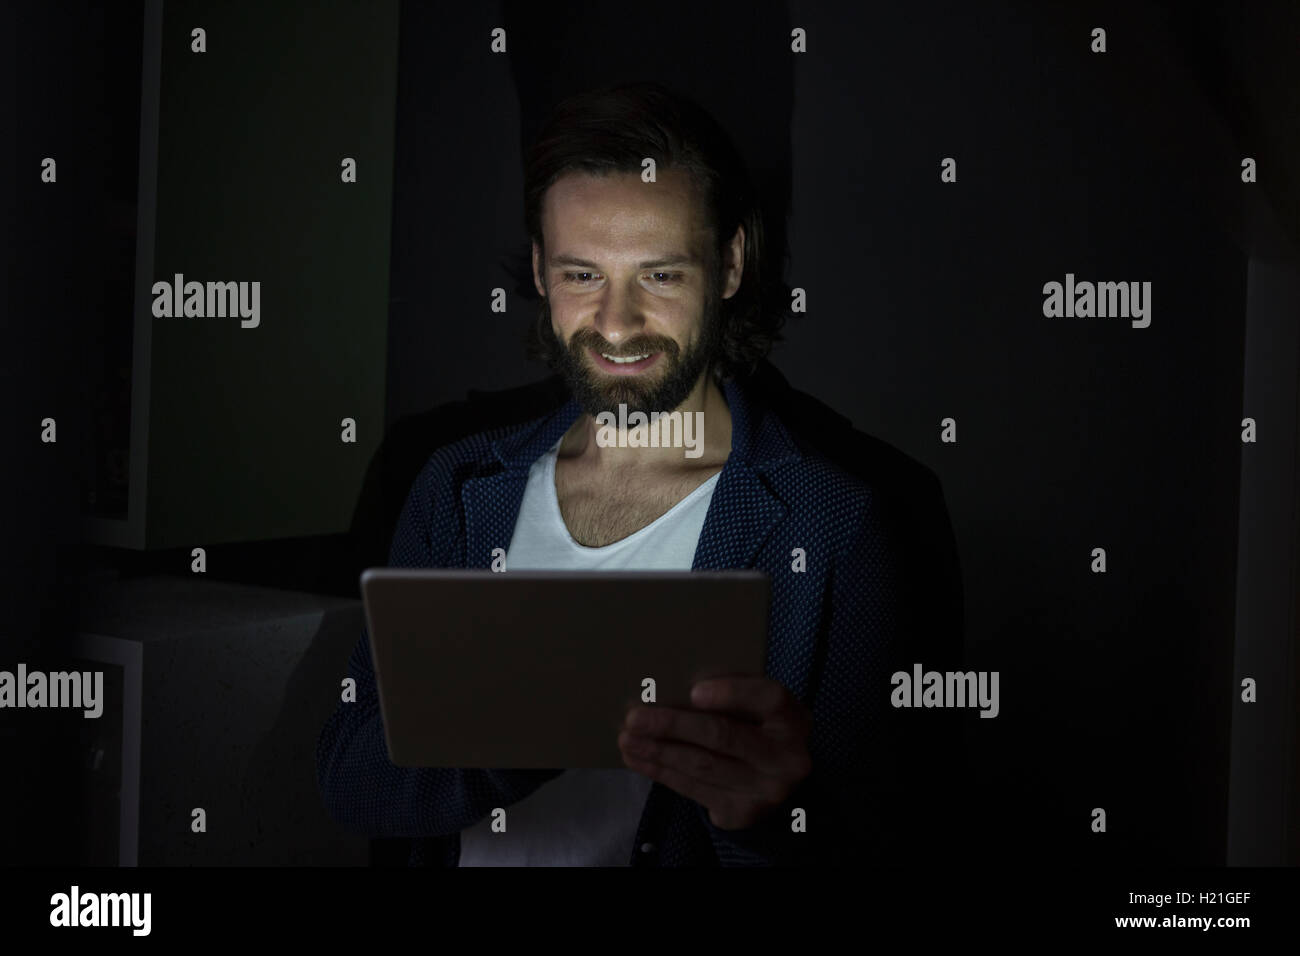 Hombre utilizando tablet digital en la oscuridad Foto de stock